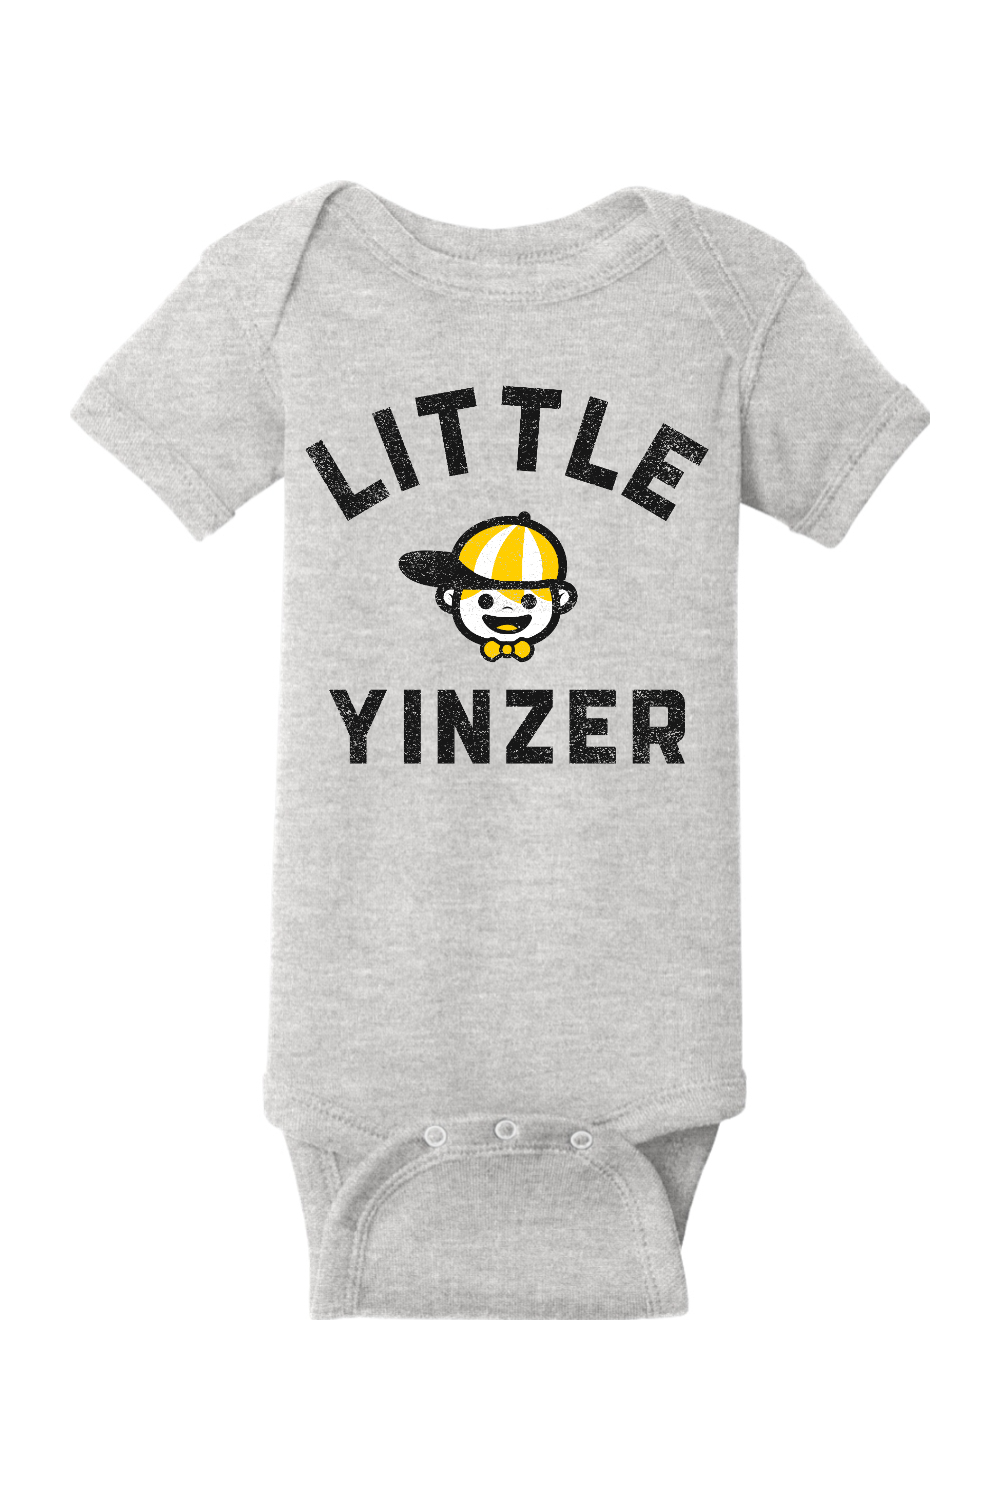 Little Yinzer - Infant Short Sleeve Baby Rib Bodysuit - Yinzylvania